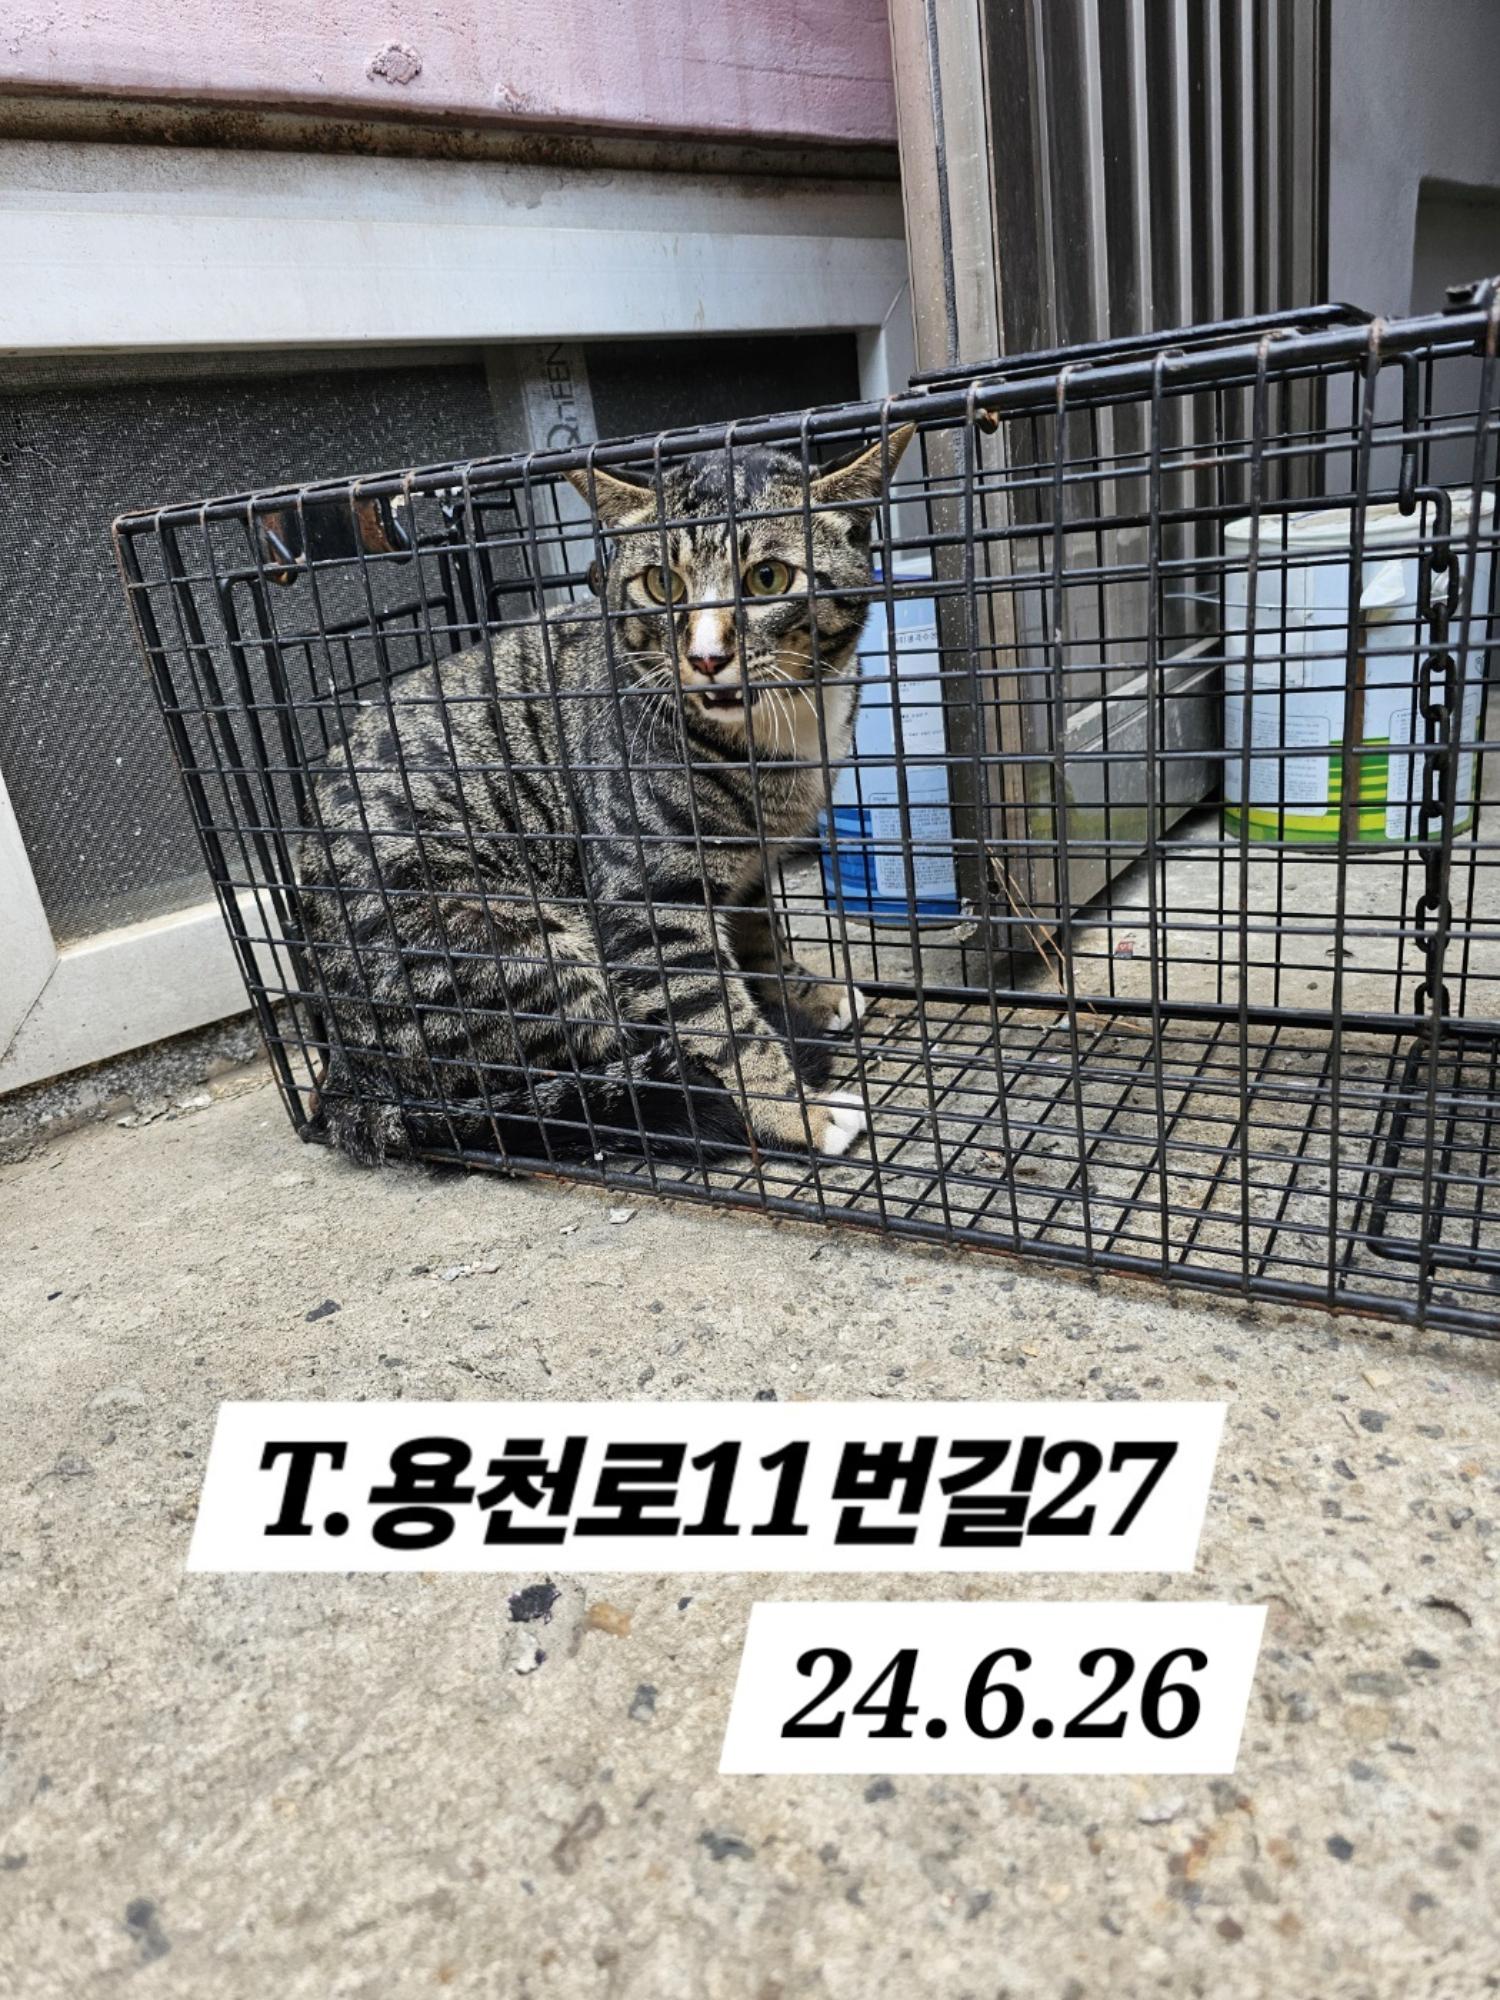 보호중동물사진 공고번호-인천-남동-2024-00381